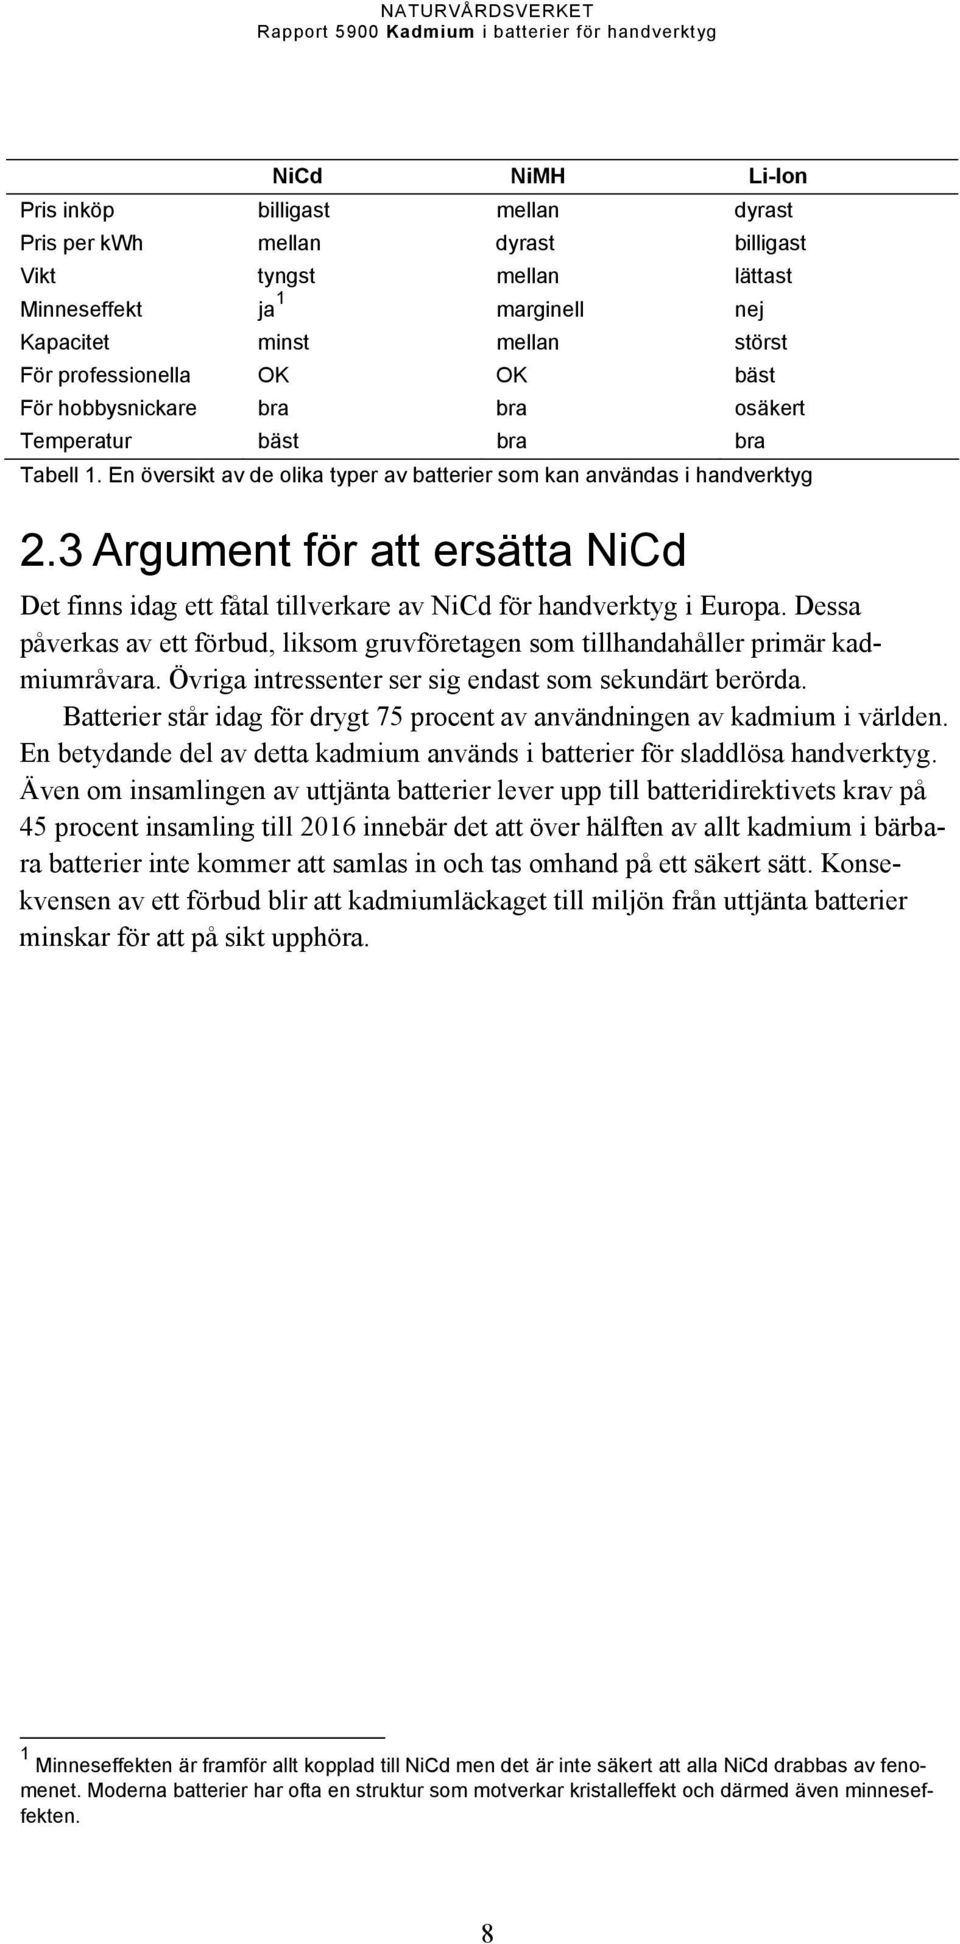 3 Argument för att ersätta NiCd Det finns idag ett fåtal tillverkare av NiCd för handverktyg i Europa. Dessa påverkas av ett förbud, liksom gruvföretagen som tillhandahåller primär kadmiumråvara.